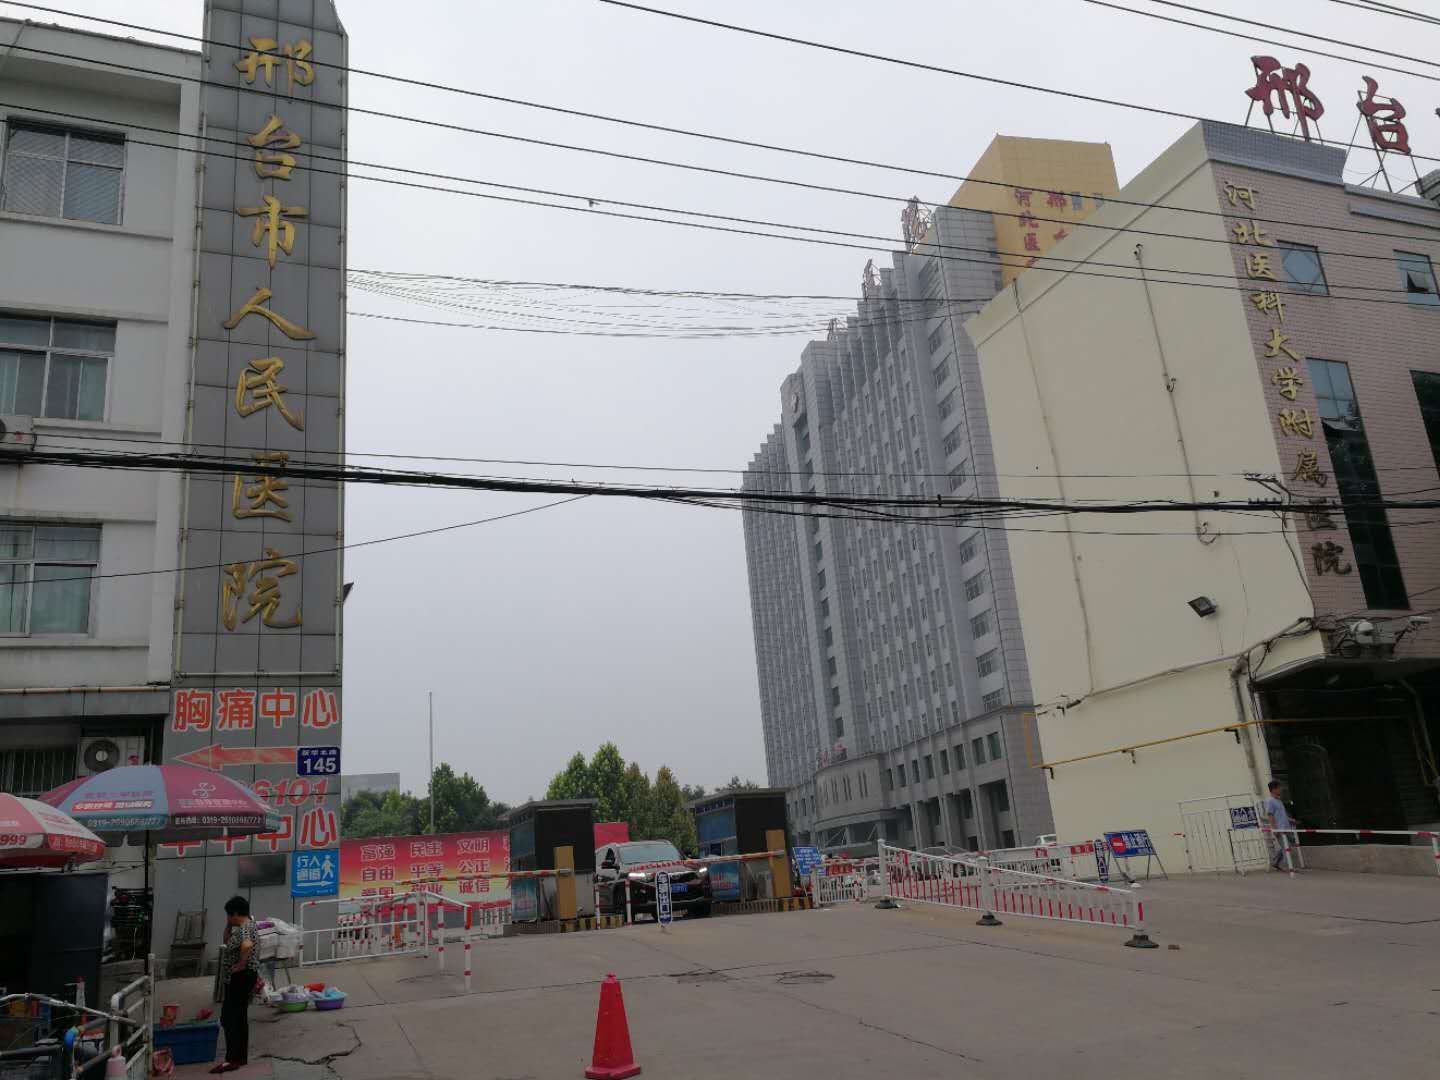 网友爆料:邢台市人民医院,停车如此收费是否合理?